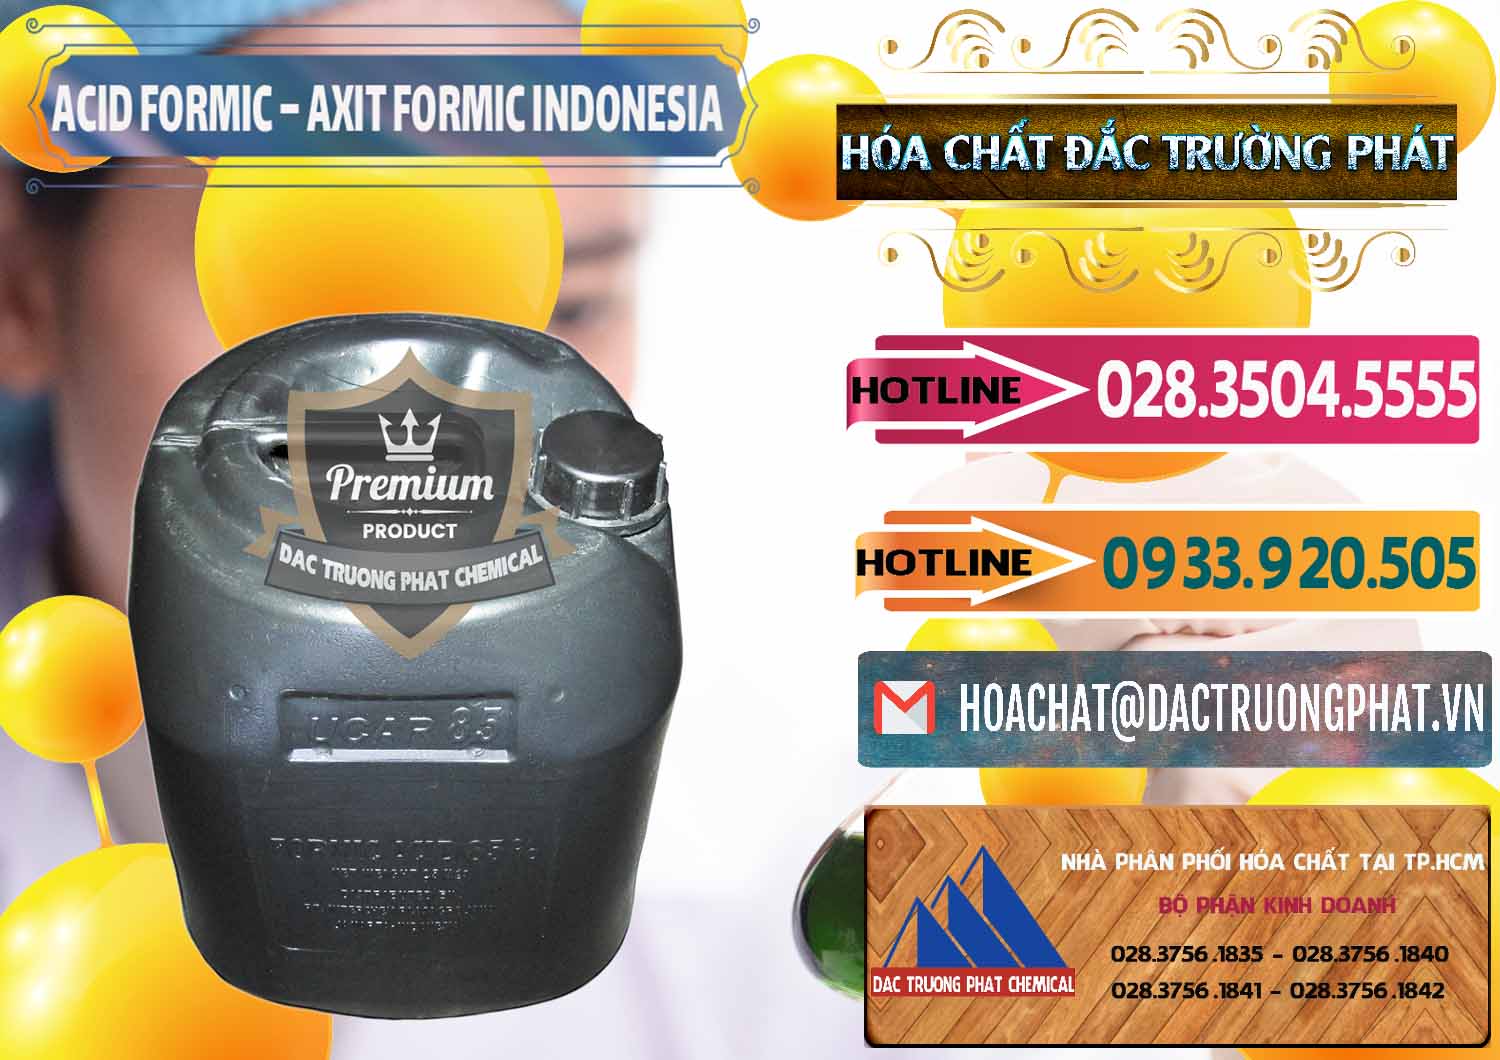 Bán và phân phối Acid Formic - Axit Formic Indonesia - 0026 - Nơi chuyên phân phối _ nhập khẩu hóa chất tại TP.HCM - dactruongphat.vn